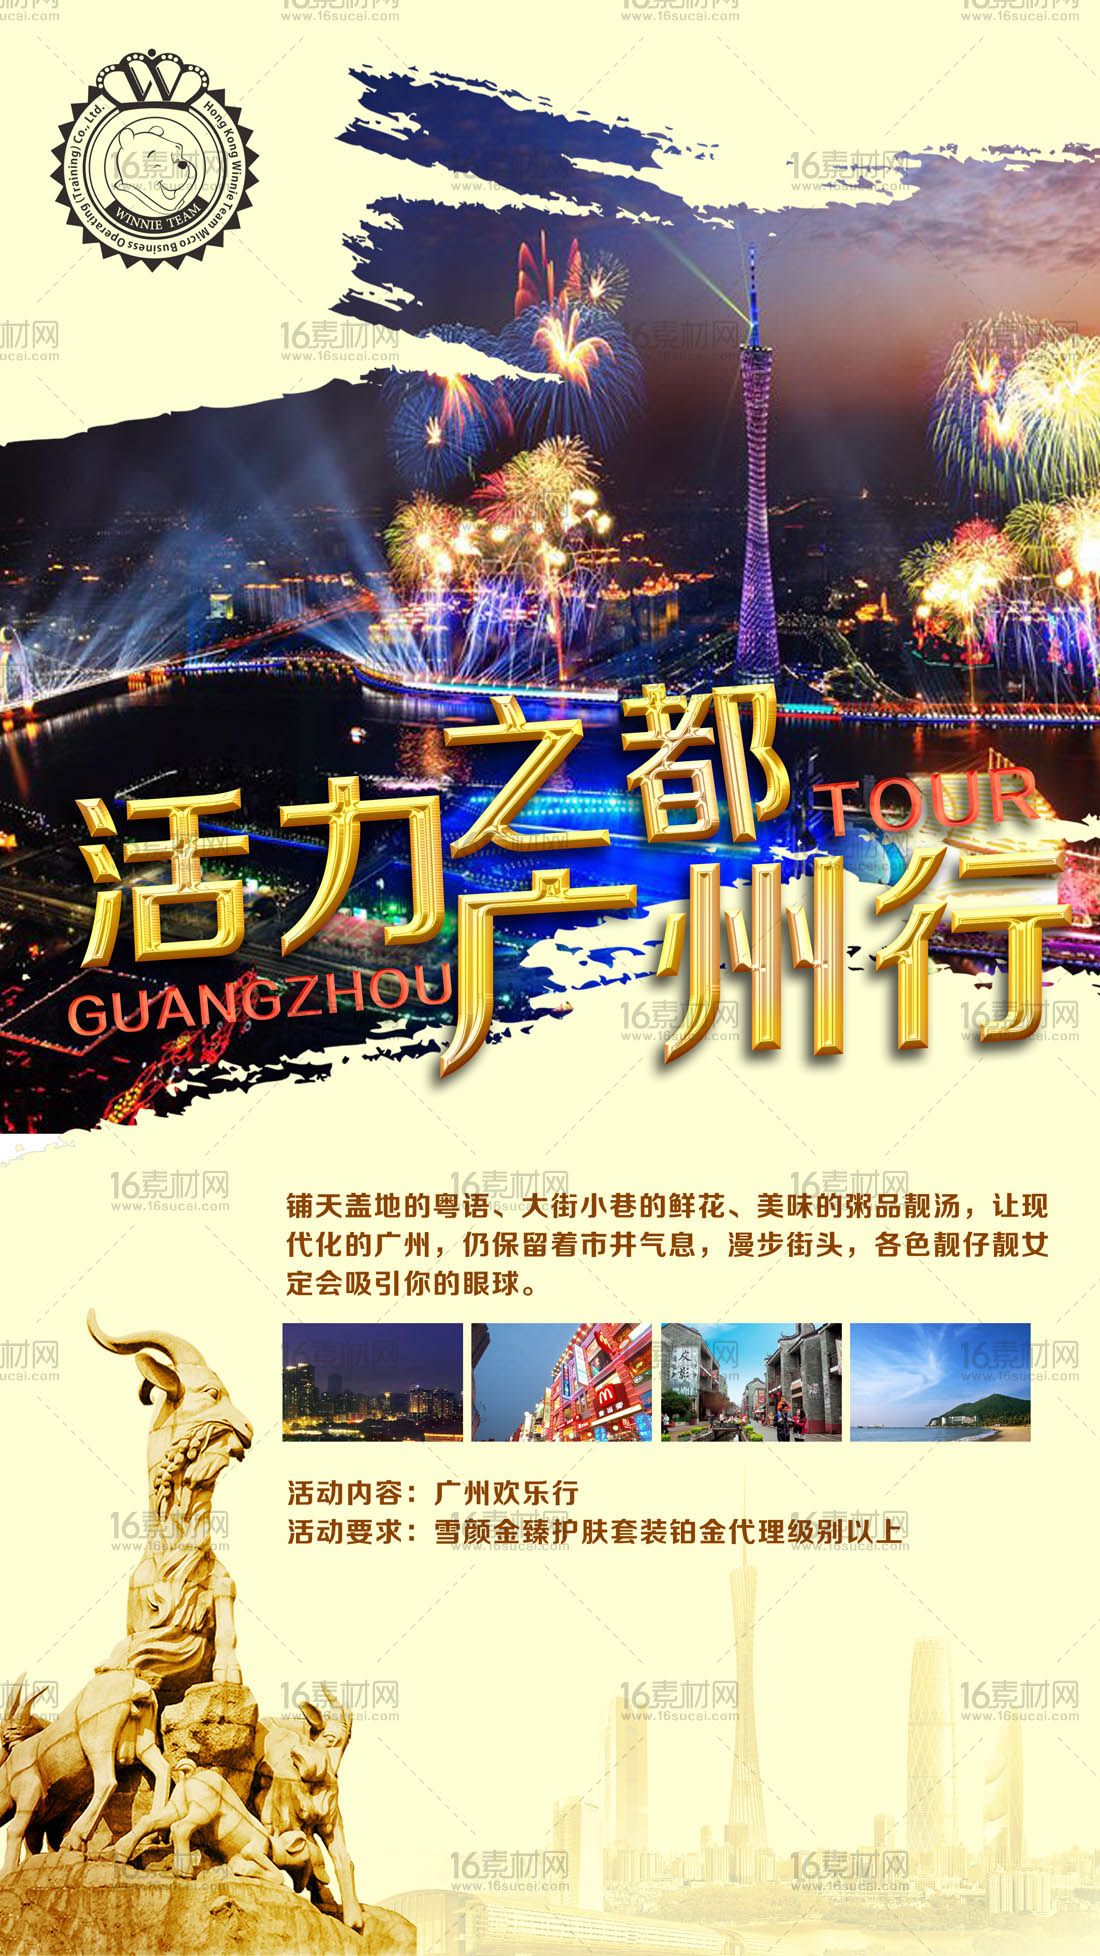 华丽广州旅游宣传海报psd分层素材